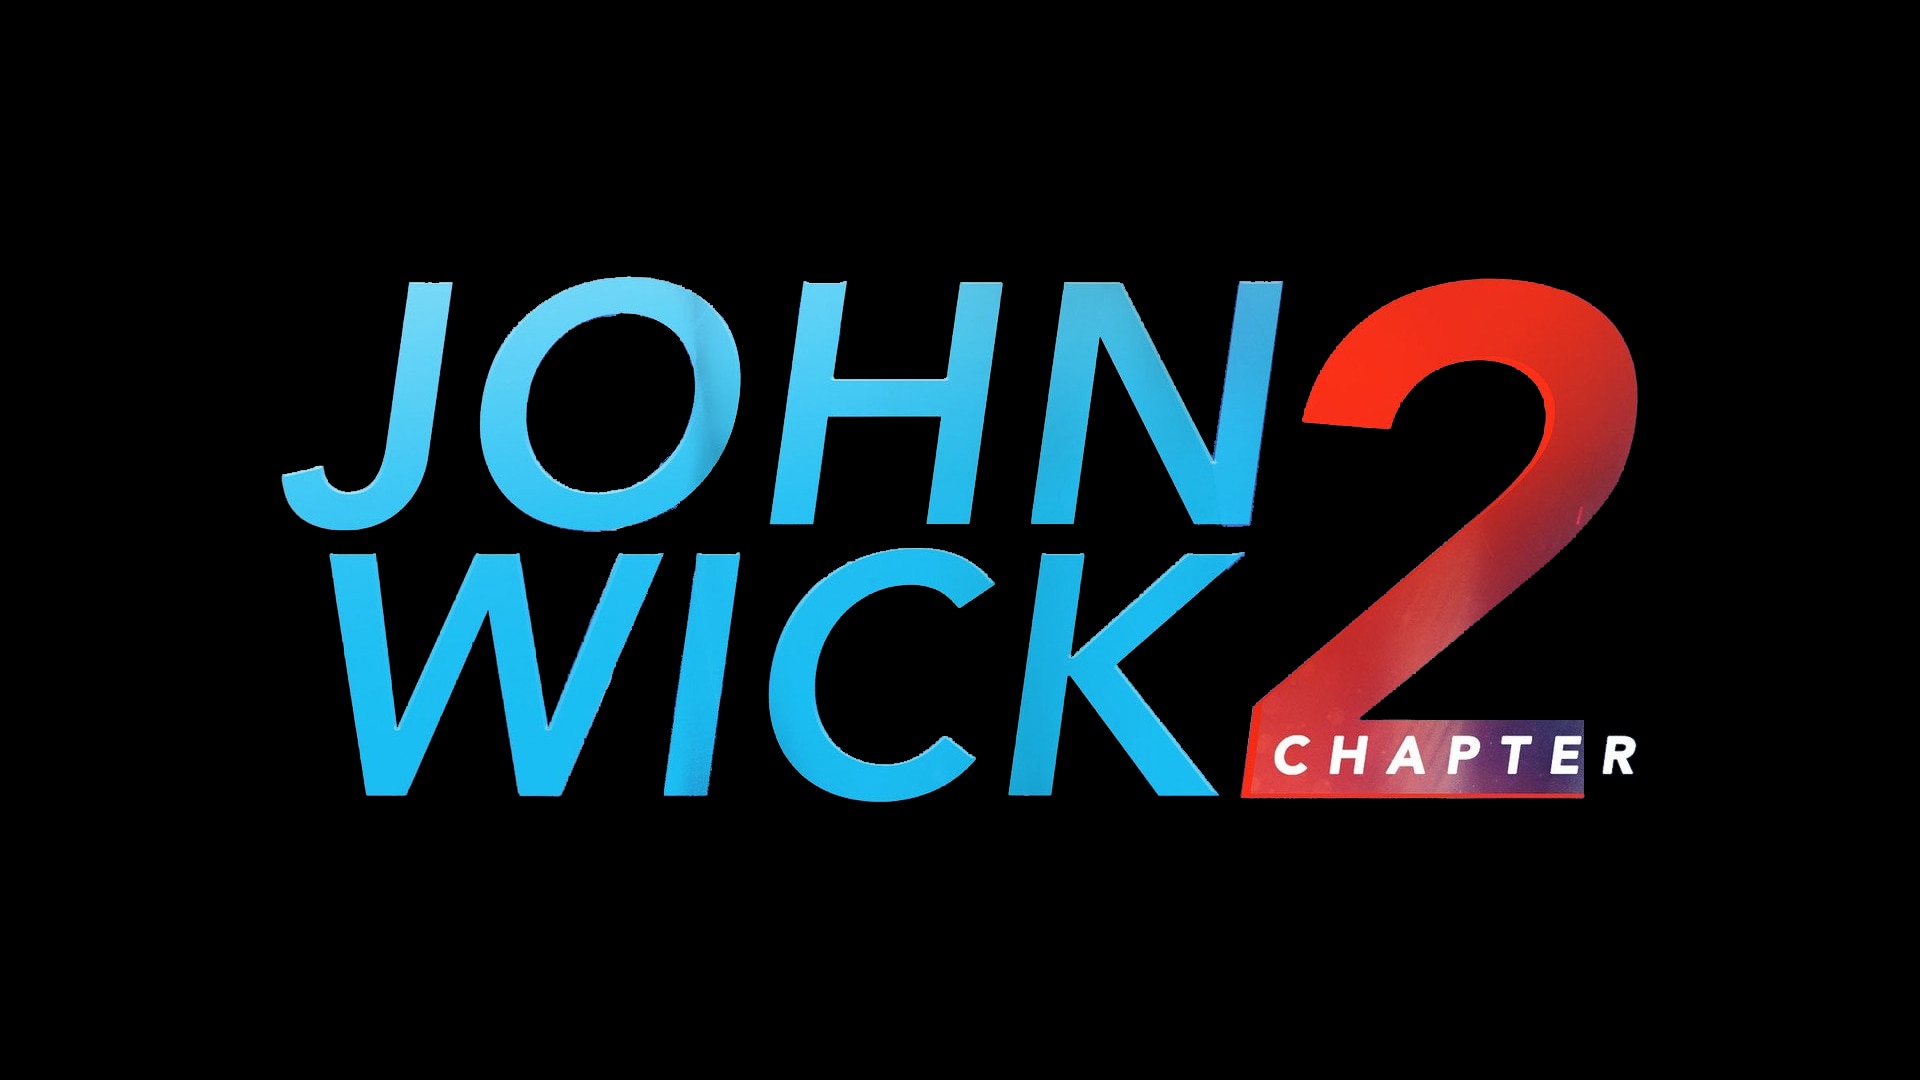 john wick 2 free online movieshare